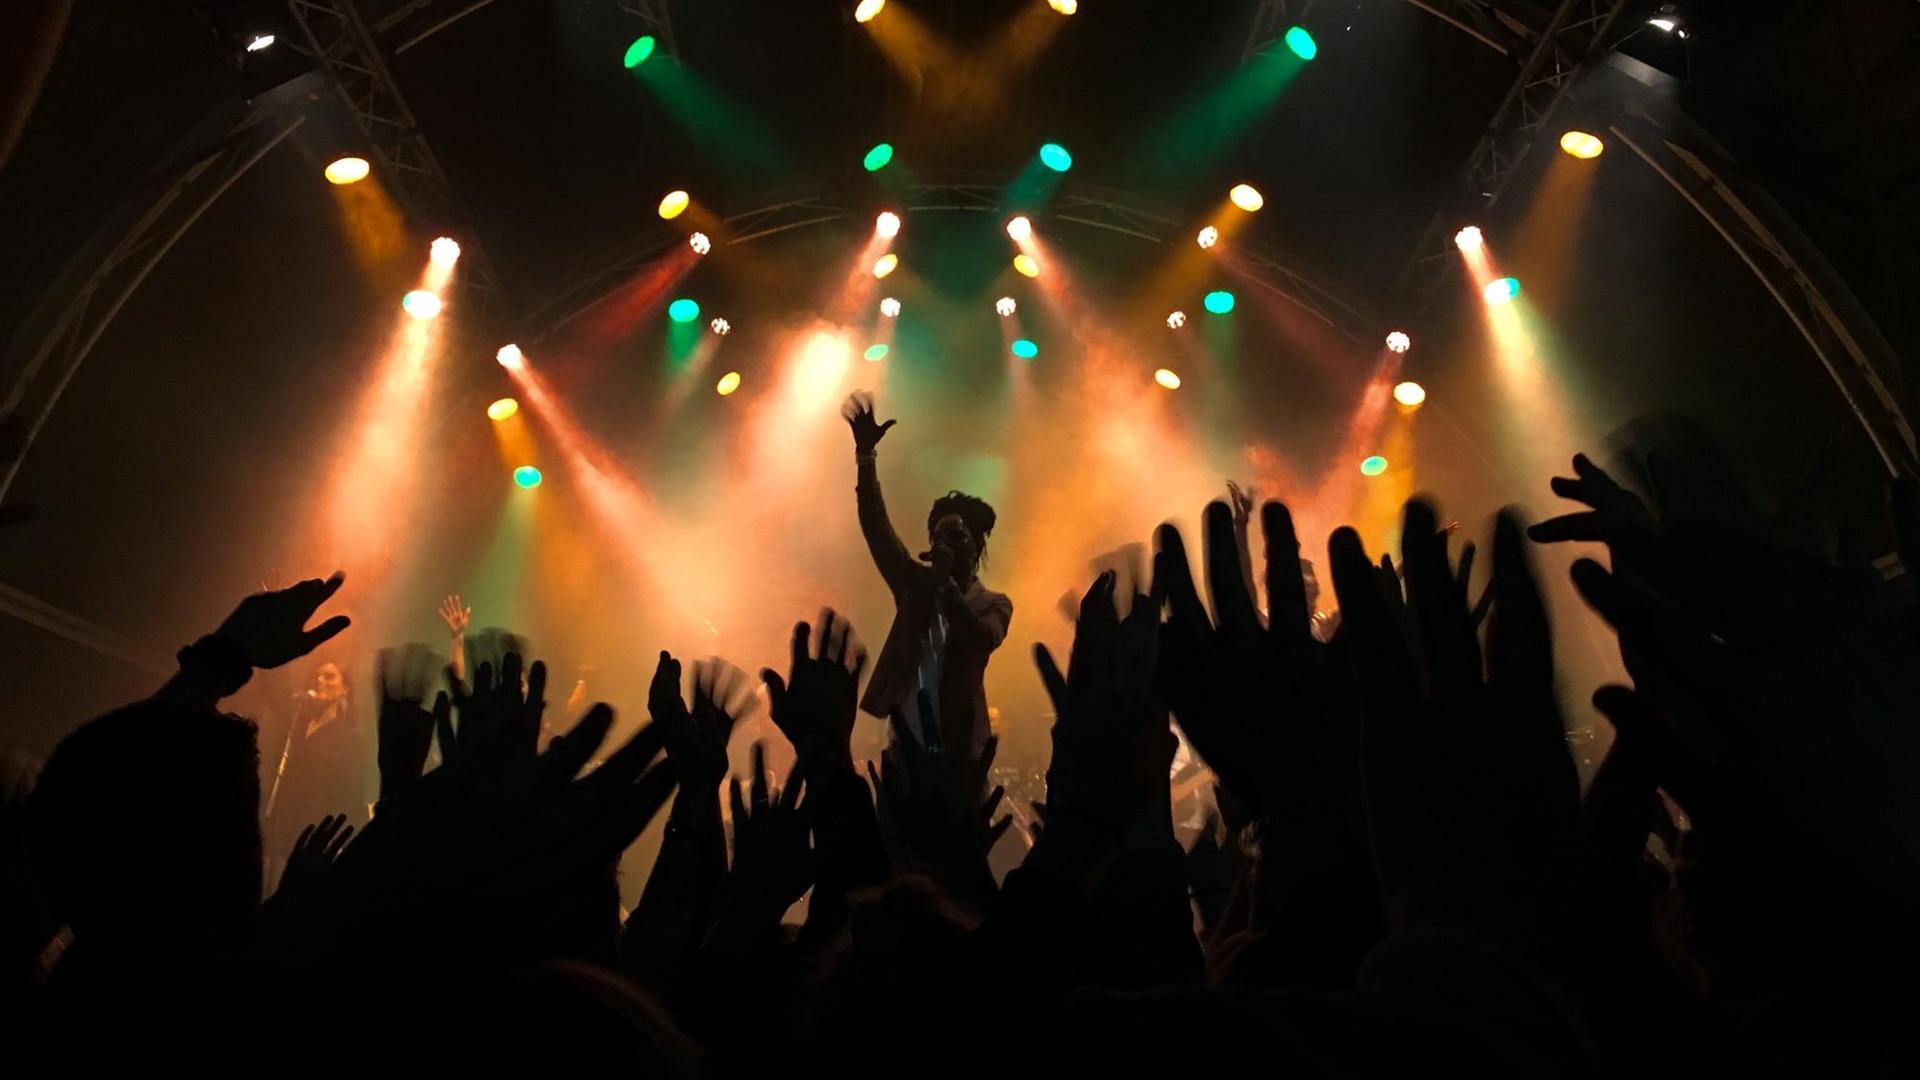 Konzertszene: Im Vorderung des Bildes sieht man viele dicht stehende Konzertbesucher, die ihre Hände in die Höhe heben. Im Hintergrund sieht man einen Sänger auf der Bühne, sein Auftritt wird von buten Scheinwerfern beleuchtet.